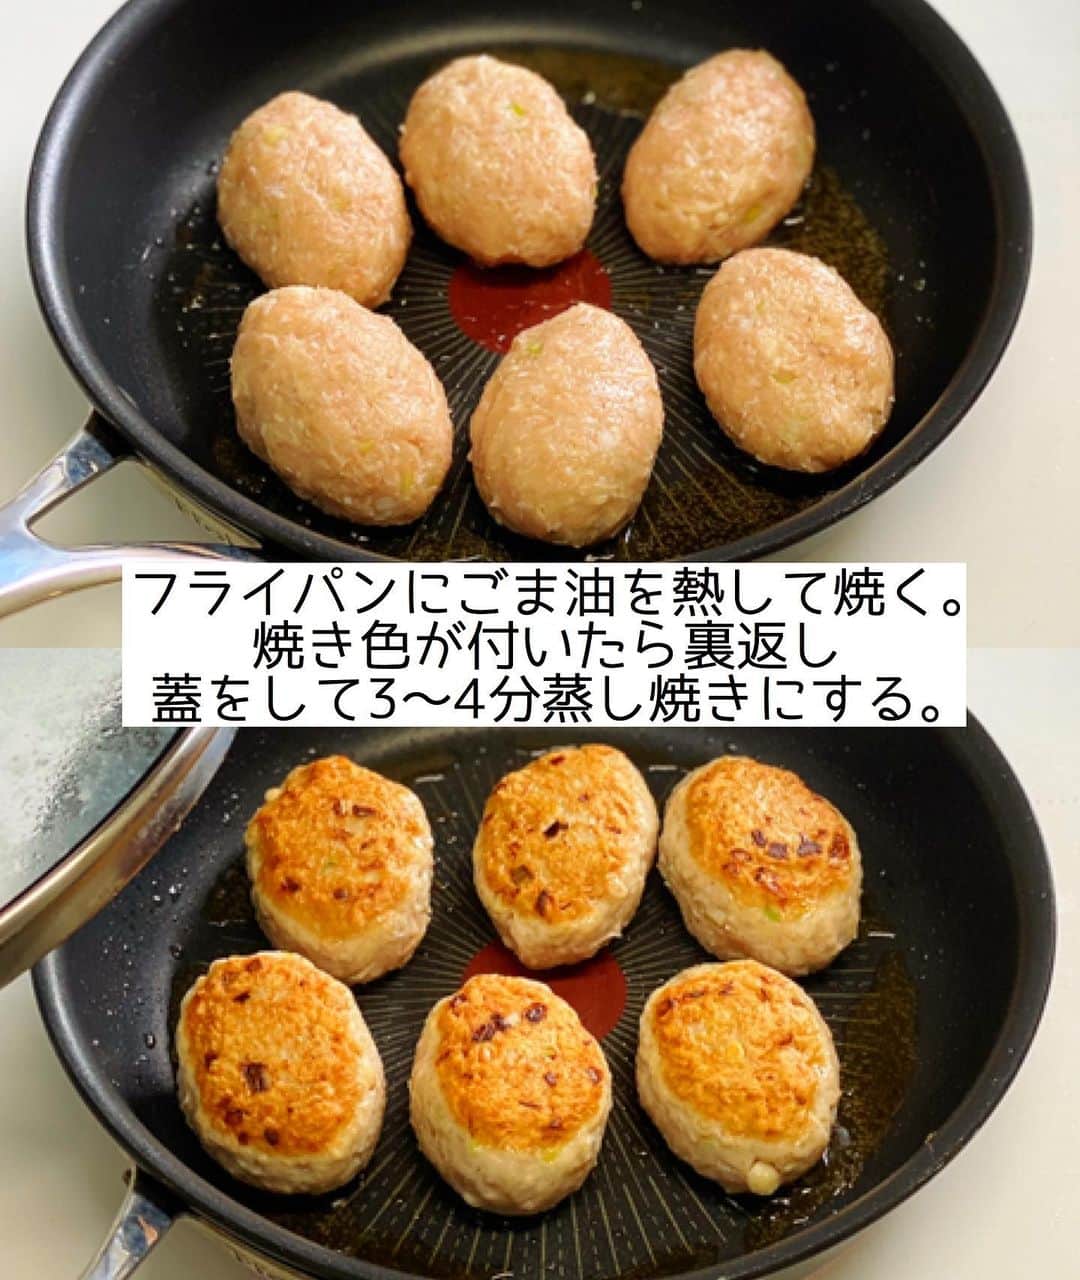 Mizuki【料理ブロガー・簡単レシピ】さんのインスタグラム写真 - (Mizuki【料理ブロガー・簡単レシピ】Instagram)「・ 【#レシピ 】ーーーーーーーーー えのきでかさ増し！鶏塩つくね ーーーーーーーーーーーーーーー ⁡ 　 ⁡ おはようございます(*^^*) ⁡ 今日ご紹介させていただくのは \ えのきでかさ増し！鶏塩つくね / ⁡ あっさり塩味の鶏つくねに えのきを加えてボリュームアップ♩ ヘルシーでも食べ応えたっぷりの 嬉しいおかずです(*´艸`) ⁡ とっても簡単にできるので よかったらお試し下さいね♡ ⁡ ⁡ ⁡ ＿＿＿＿＿＿＿＿＿＿＿＿＿＿＿＿＿＿＿＿＿ 【2〜3人分】 鶏ひき肉...300g えのき...1/2袋(100g) 長ねぎ...10cm ●片栗粉・酒...各大1 ●塩...小1/3 ●こしょう...少々 ●鶏がらスープ...ふたつまみ ごま油...小2 ポン酢...適量 ⁡ 1.えのきは長さを3等分に切ってほぐし、長ねぎはみじん切りにする。ボウルにひき肉、えのき、長ねぎ、●を入れてよく混ぜ、6等分して楕円形に成形する。(手に水をつけるとくっつきません♩) 2.フライパンにごま油を中火で熱して1を焼く。焼き色が付いたら裏返し、蓋をのせて弱めの中火で3〜4分蒸し焼きにする。 3.火が通ったら器に盛り、ポン酢をかける。 ￣￣￣￣￣￣￣￣￣￣￣￣￣￣￣￣￣￣￣￣￣ ⁡ ⁡ ⁡ 《ポイント》 ♦︎つくね自体は優しい塩味です♩ ♦︎成形する時は手に水をつけるとくっつきません♩ ♦︎成形した状態の厚みにより焼き時間は調節して下さい♩ ♦︎焼いた状態で冷凍保存できます♩ ⁡ ⁡ ⁡ ⁡ ⁡ ⁡ ⁡ ⁡ \ 新刊予約開始しました /(9月24日発売) ⁡ 🔹🔹🔹🔹🔹🔹🔹🔹🔹🔹🔹🔹 今日のごはんこれに決まり！ #Mizukiのレシピノート 決定版 500品 🔹🔹🔹🔹🔹🔹🔹🔹🔹🔹🔹🔹 ⁡ 総レシピ6000点の中からレシピを厳選！ まさかの【500レシピ掲載】しました⭐️ (もはや辞典...) ⁡ 肉や魚のメインおかずはもちろん 副菜、丼、麺、スープ、お菓子 ハレの日のレシピ、鍋のレシピまで 全てこの一冊で完結！！ ⁡ ⁡ 🎁新刊予約でエプロンが当たる🎁 プレゼントキャンペーン実施中 ￣￣￣￣￣￣￣￣￣￣￣￣￣￣￣￣￣￣￣￣￣ 【応募方法】 ❶1枚目に表紙画像 2枚目にAmazonで予約したことがわかる画像 (どちらもスクショでOK)を貼りつける。 ❷ハッシュタグ【#Mizukiのレシピノート 】 をつけて投稿！ ￣￣￣￣￣￣￣￣￣￣￣￣￣￣￣￣￣￣￣￣￣￣ ⁡ ⁡ ⁡ ⁡ ⁡ ＿＿＿＿＿＿＿＿＿＿＿＿＿＿＿＿ 🟥YouTube 料理動画配信中🟥 ￣￣￣￣￣￣￣￣￣￣￣￣￣￣￣￣ 料理とお菓子の簡単レシピを ご紹介しています☺️💓 ⁡ 【奇跡のキッチン】で検索🔍 (ハイライトからも飛べます✨) ￣￣￣￣￣￣￣￣￣￣￣￣￣￣￣￣ ⁡ ⁡ ⁡ ＿＿＿＿＿＿＿＿＿＿＿＿＿＿＿＿ 🔶🔶recipe book🔶🔶 ￣￣￣￣￣￣￣￣￣￣￣￣￣￣￣￣ ホケミレシピの決定版♩ \はじめてでも失敗しない/ 📙#ホットケーキミックスのお菓子 ⁡ NHKまる得マガジンテキスト☆ ホットケーキミックス で ⁡ 📗絶品おやつ&意外なランチ ⁡ しんどくない献立、考えました♩ \𝟣𝟧分でいただきます/ 📕#Mizukiの2品献立 ⁡ 和食をもっとカジュアルに♩ \毎日のごはんがラクになる/ 📘#Mizukiの今どき和食  ＿＿＿＿＿＿＿＿＿＿＿＿＿＿＿＿＿ ⁡ ⁡ ⁡ ⁡ #鶏塩つくねm #つくね #えのき #鶏つくね #mizuki #簡単レシピ #時短レシピ #節約レシピ #料理 #料理初心者  #時短ごはん #節約ごはん #フーディーテーブル #おうちごはん #デリスタグラマー #おうちごはんlover #料理好きな人と繋がりたい #写真好きな人と繋がりたい #foodpick#cooking#recipe #𝗅𝗂𝗇_𝗌𝗍𝖺𝗀𝗋𝖺𝗆𝗆𝖾𝗋#foodporn」8月21日 8時30分 - mizuki_31cafe